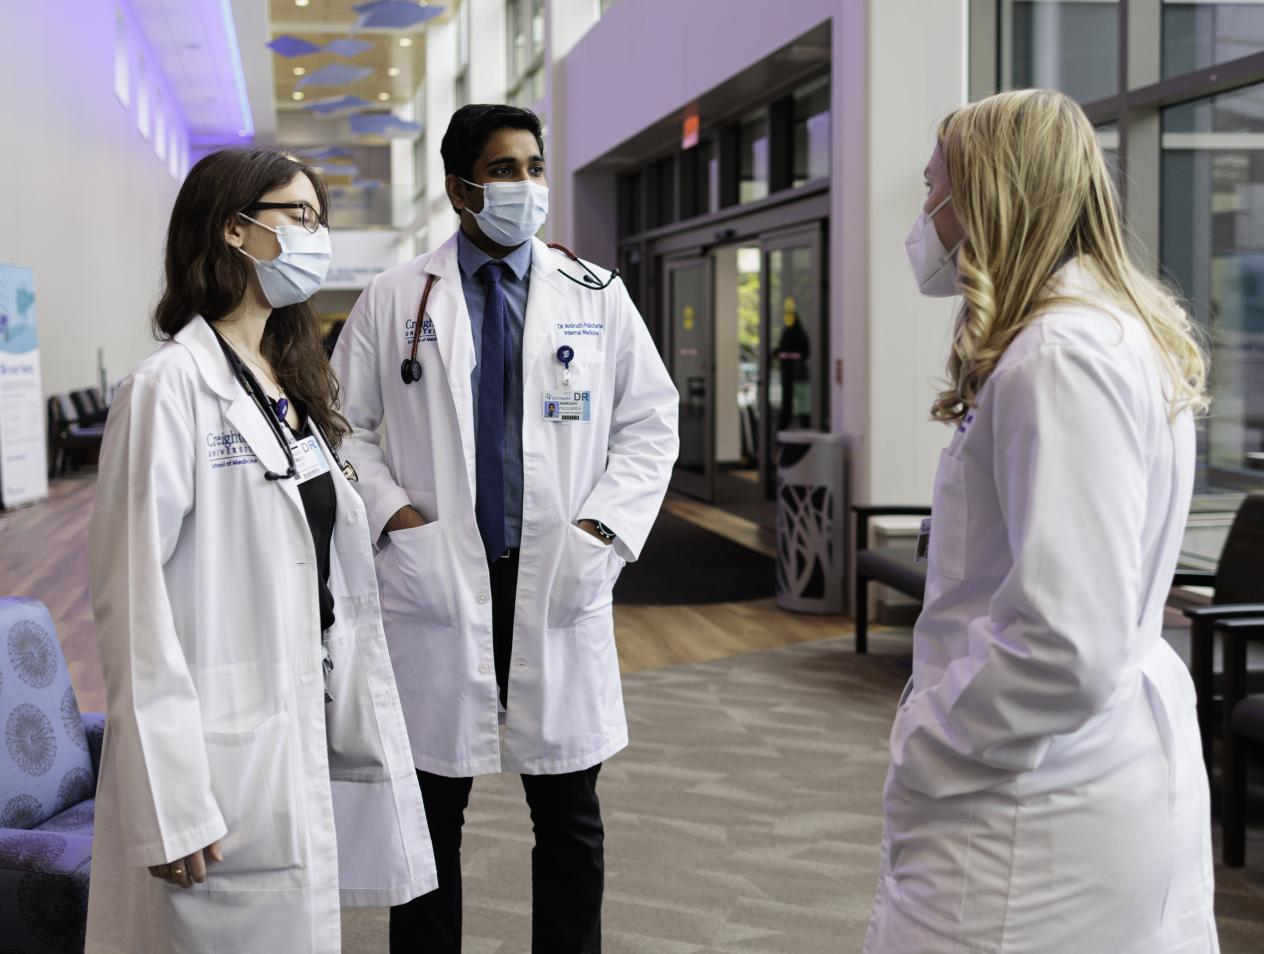 Doctors having conversation in hallway wearing white coats.